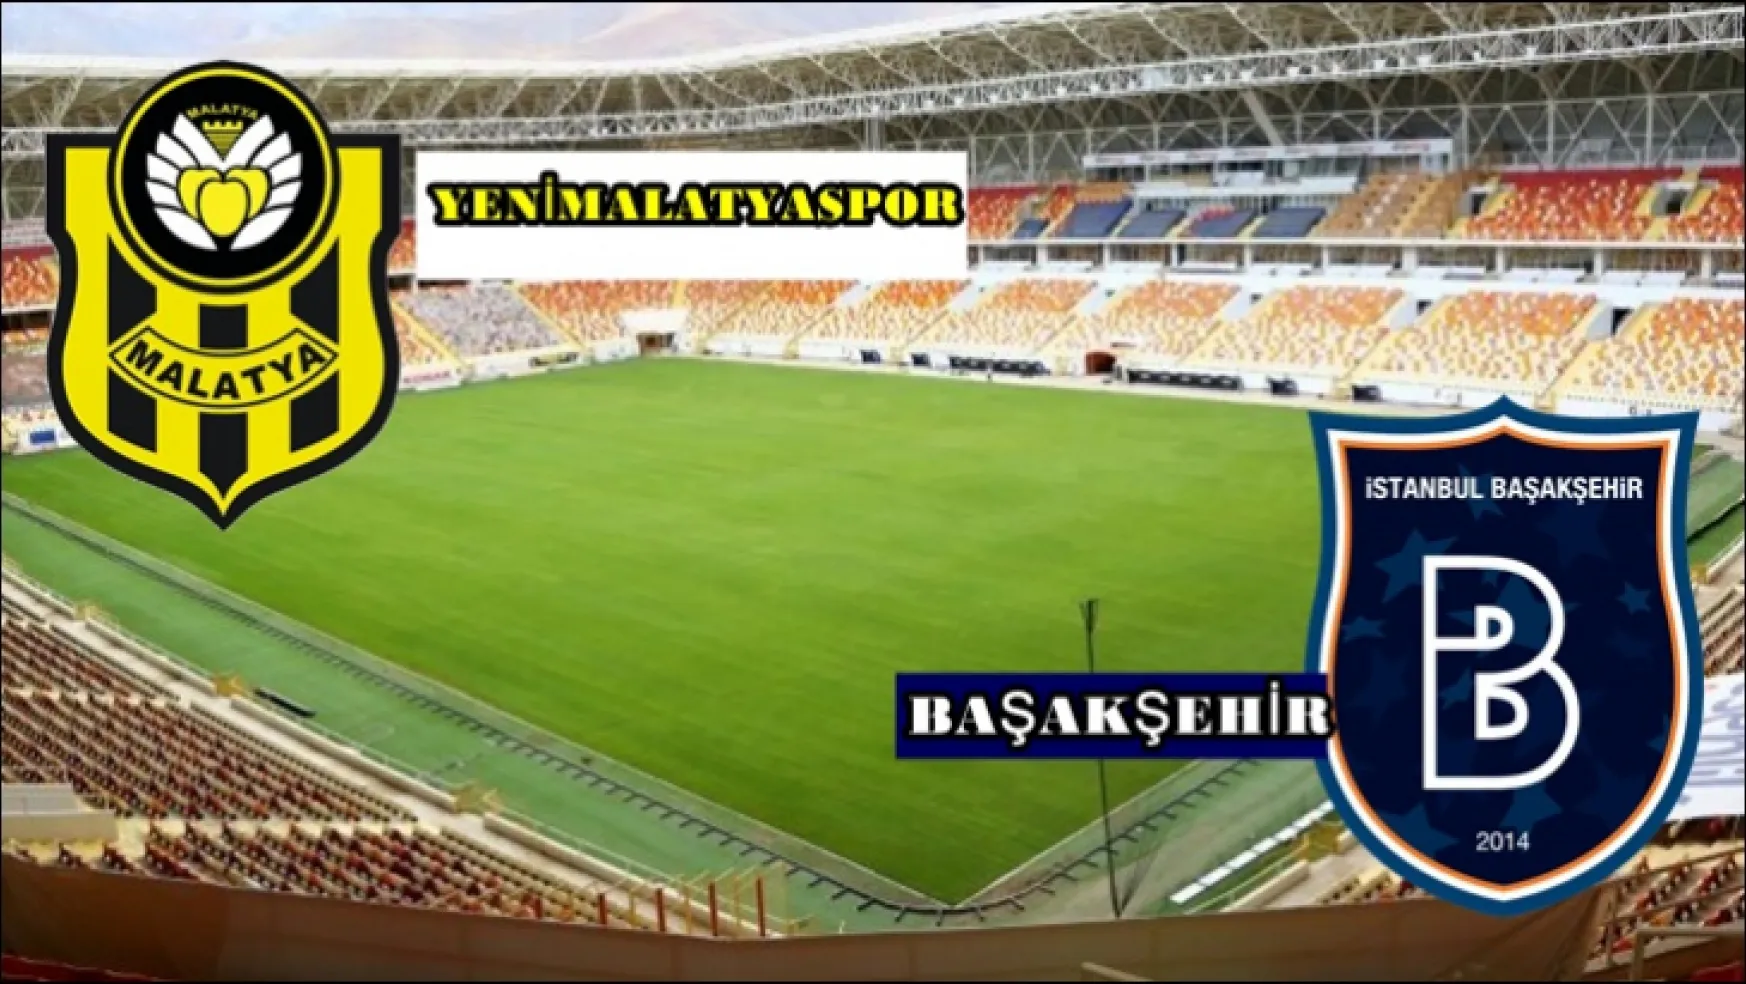 Yeni Malatyaspor - Başakşehir 1-3